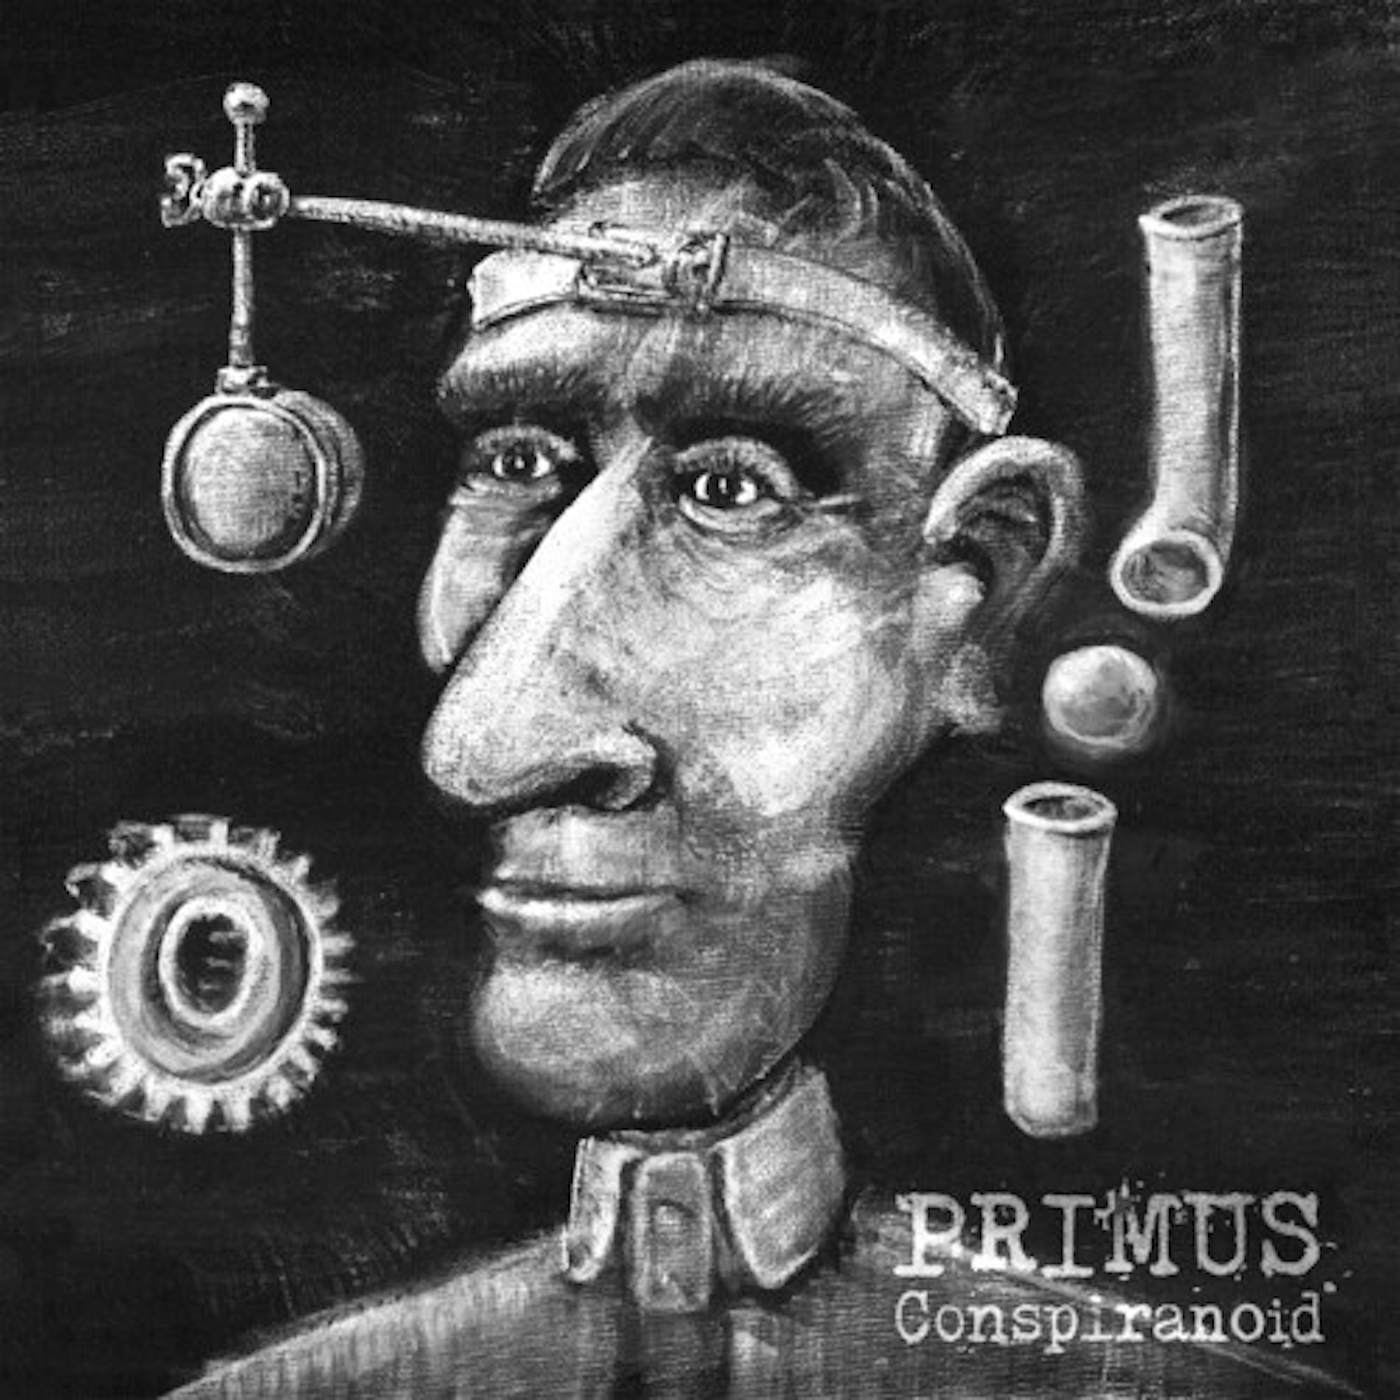 Primus CONSPIRANOID CD